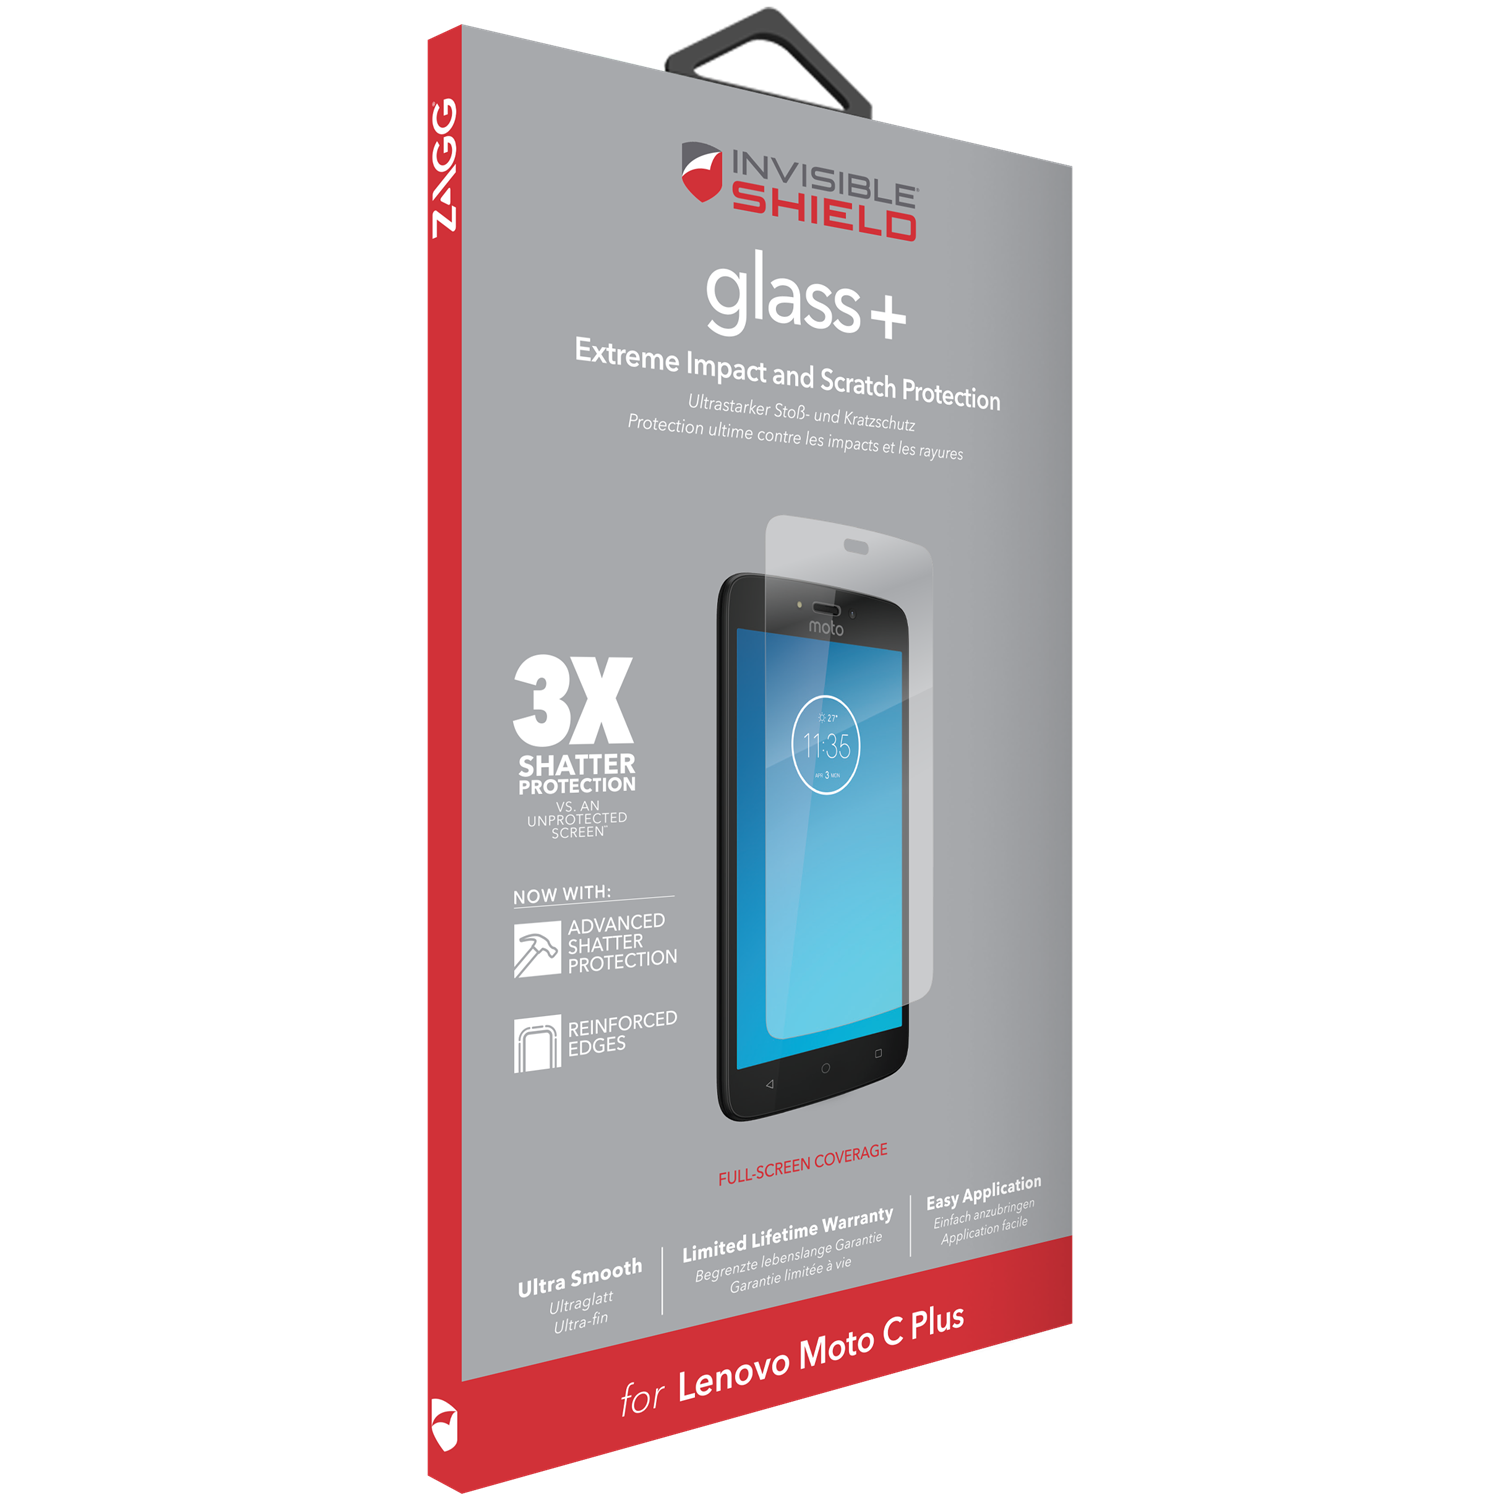 Motorola Moto C Plus InvisibleShield Glass Plus